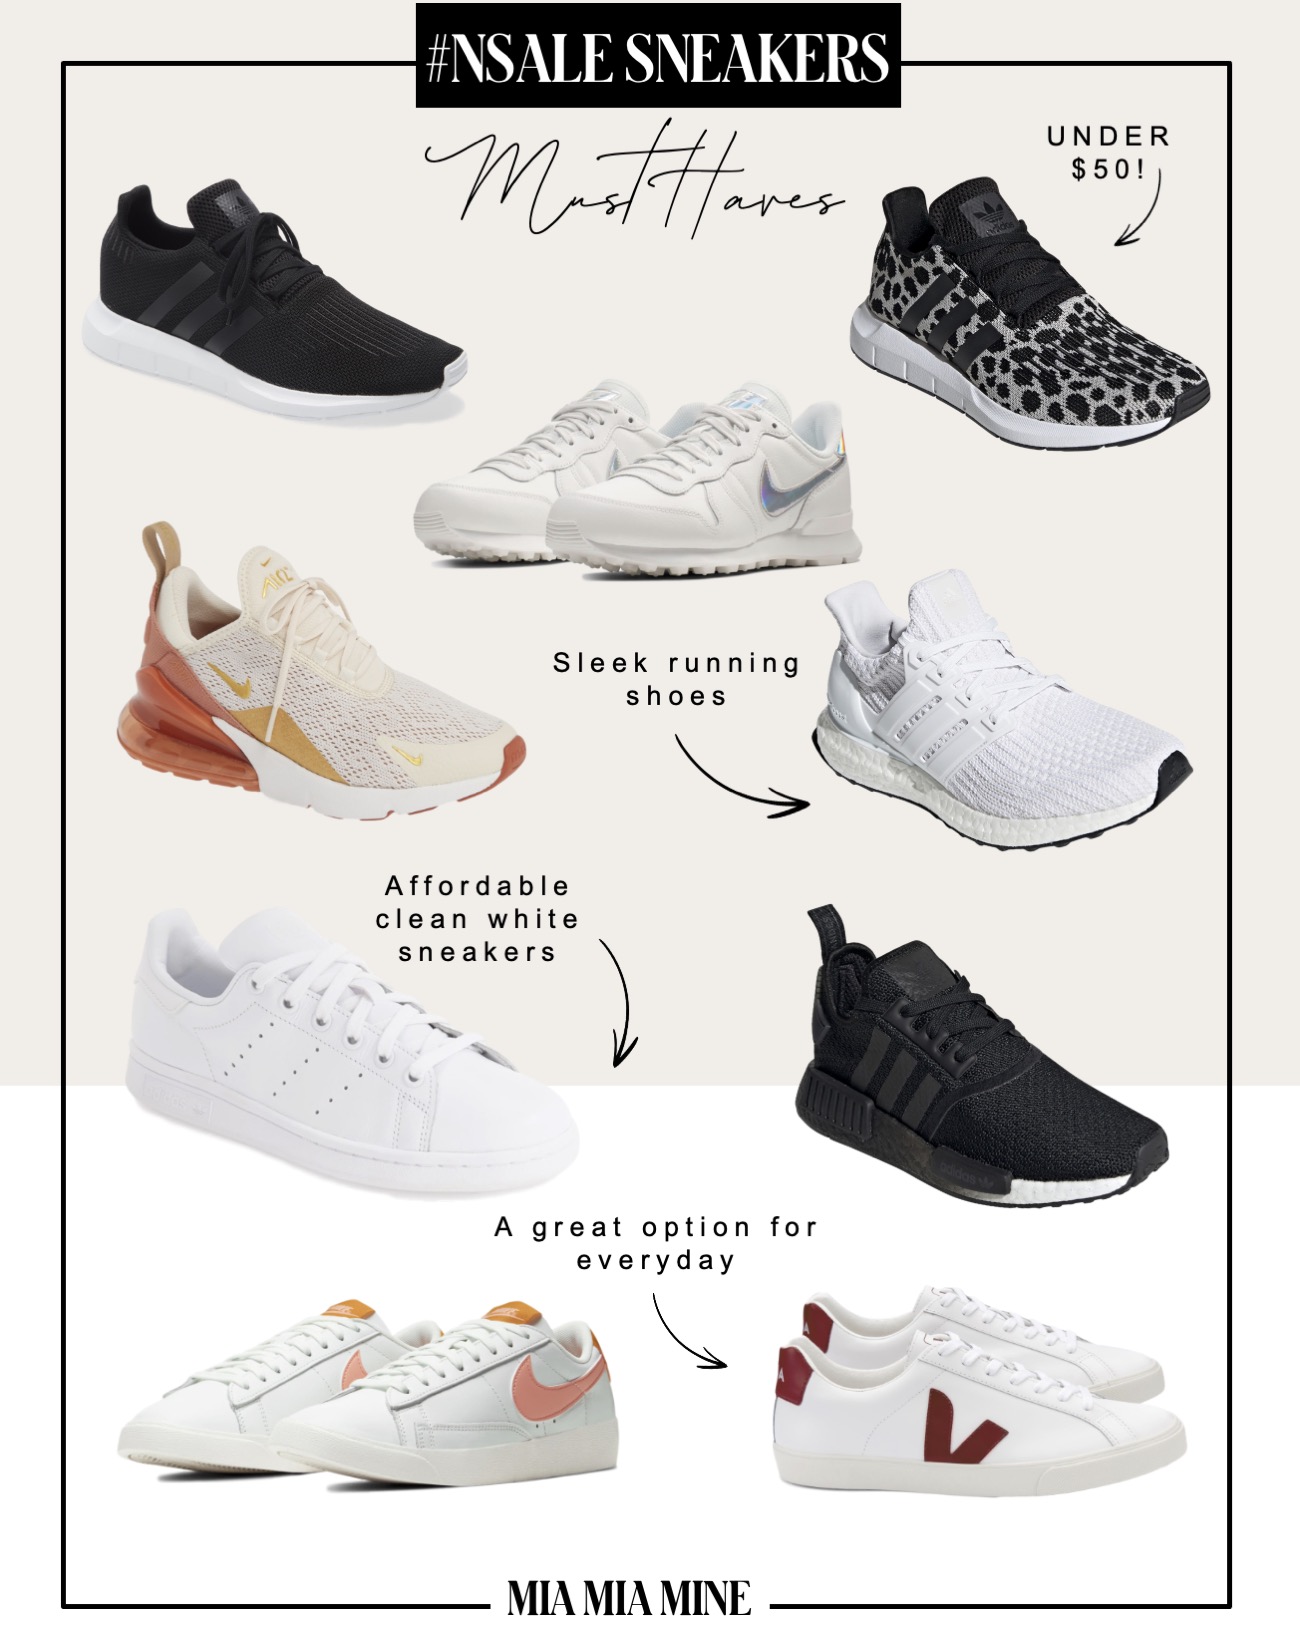 nordstrom anniversary sale 2020 sneaker picks by fashion blogger miamiamine